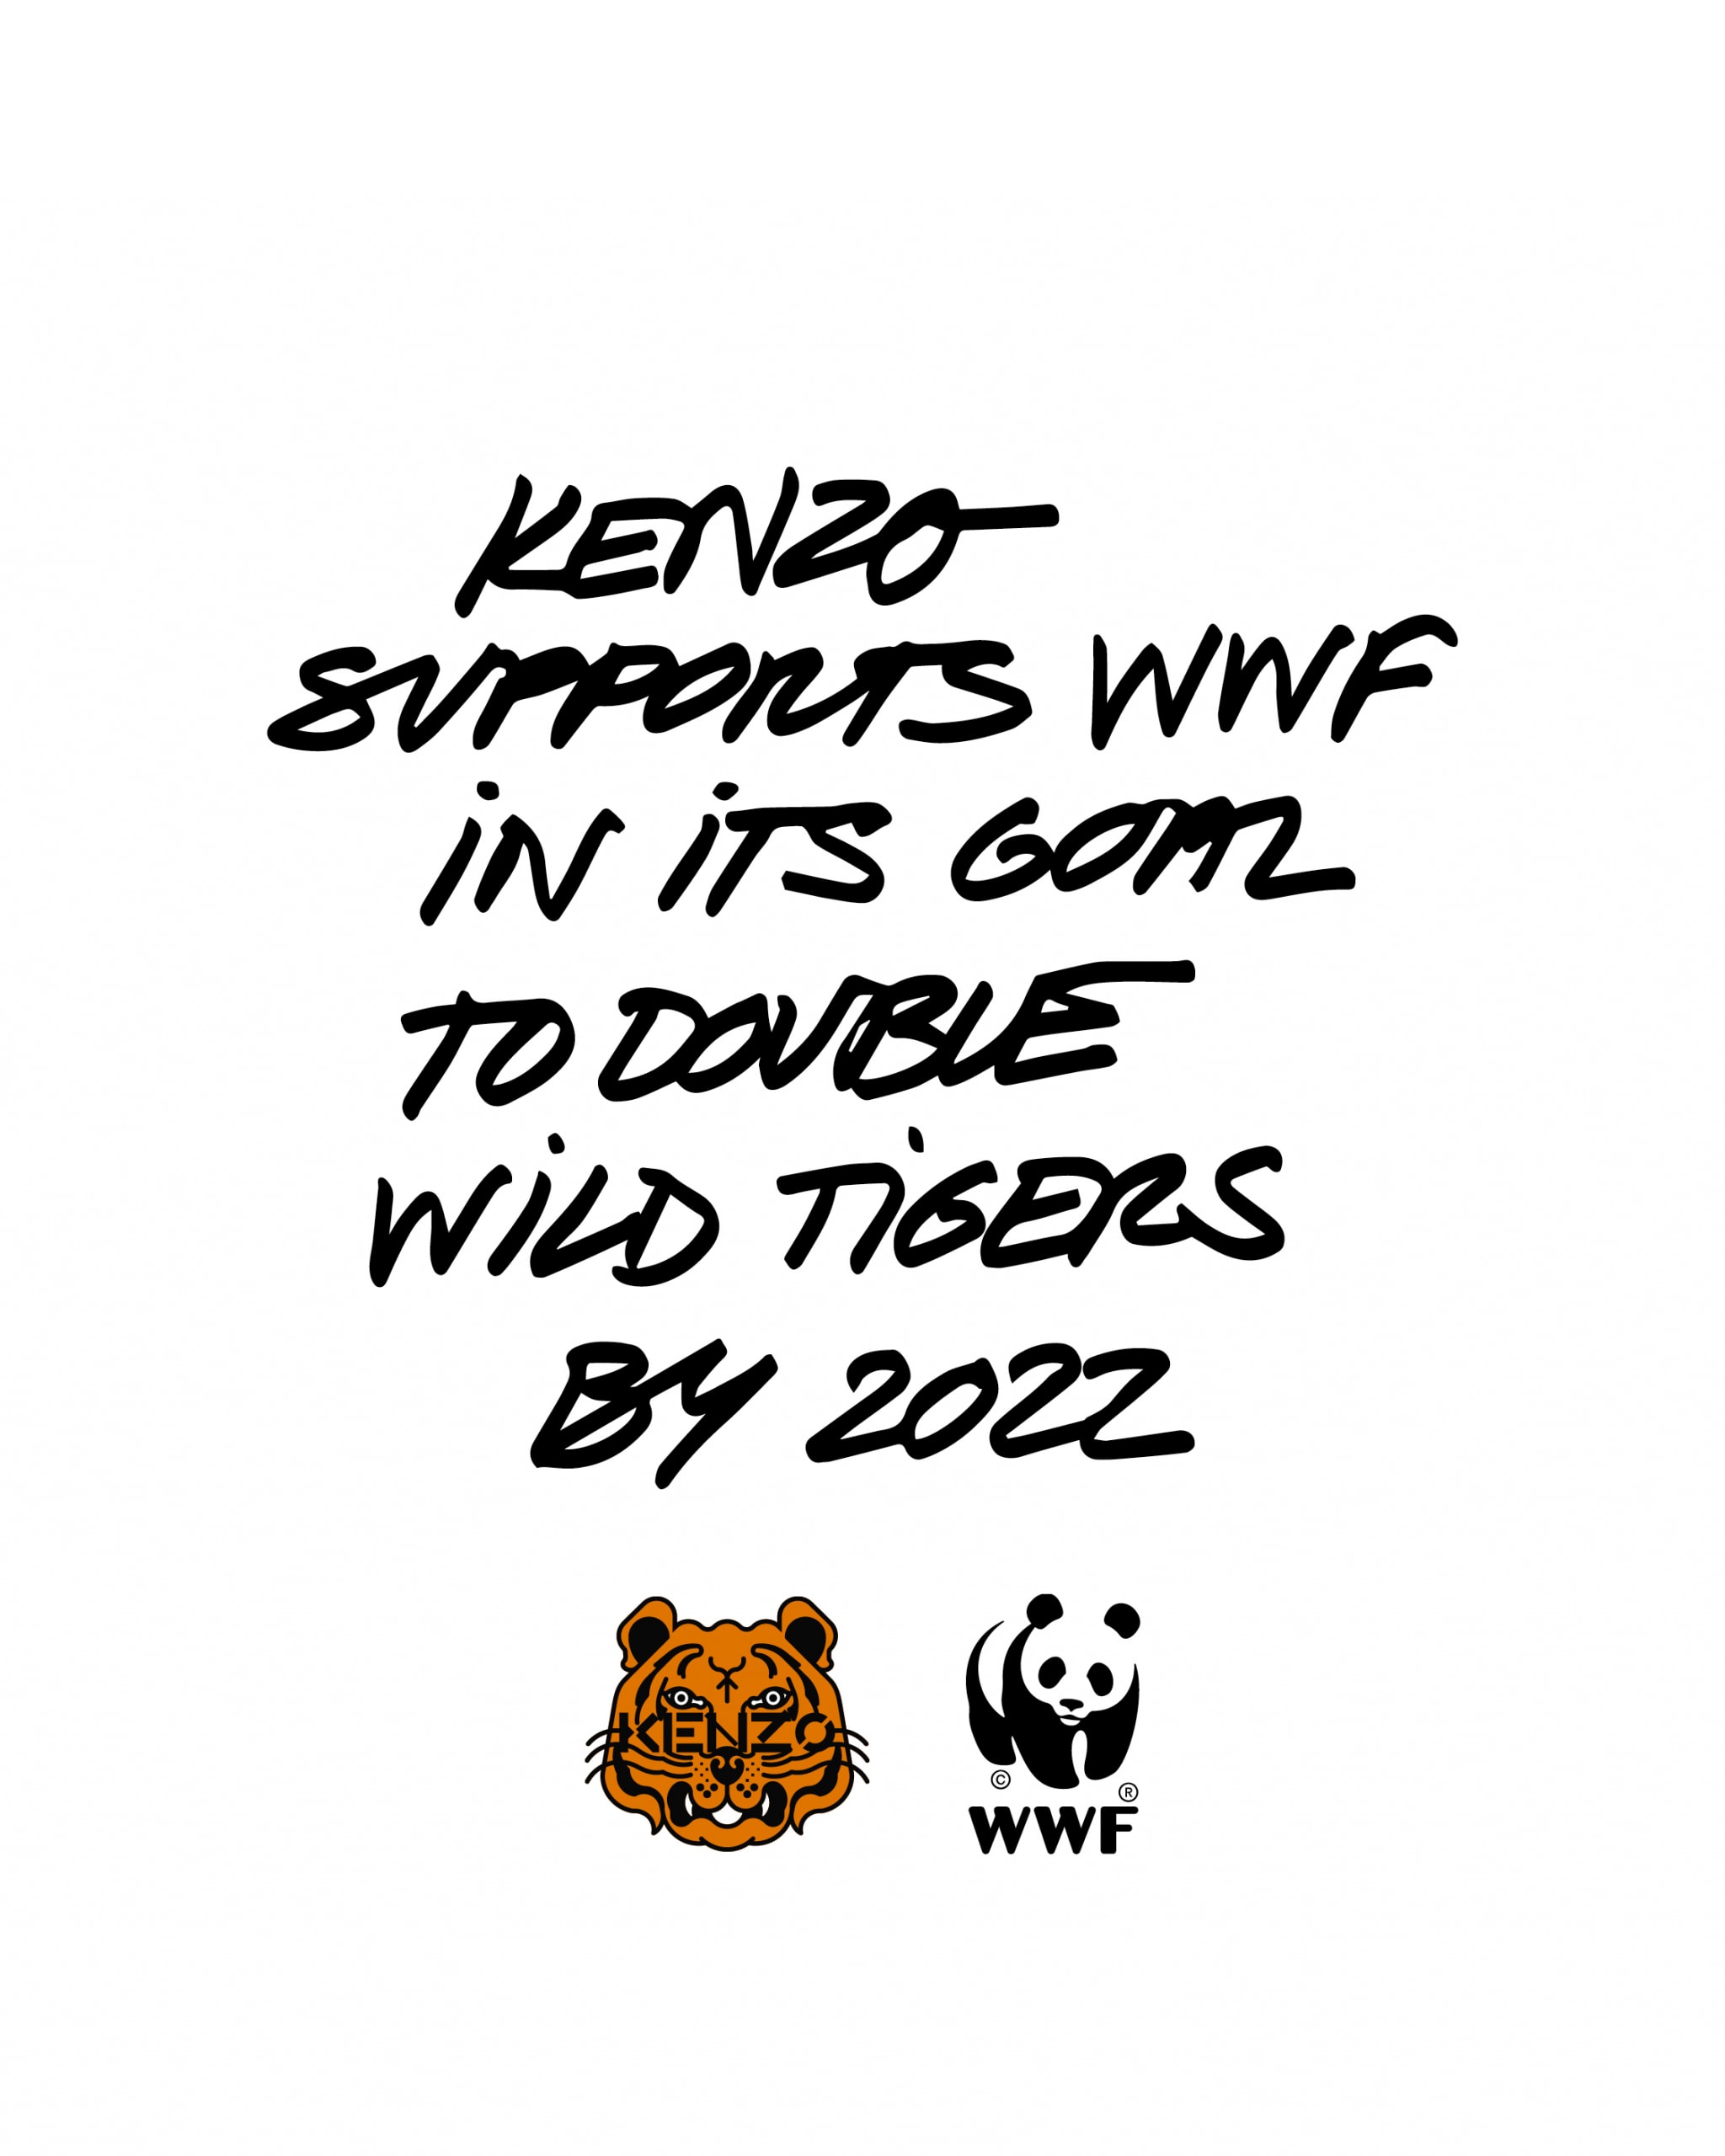 KENZO 联合 WWF 推出限定系列